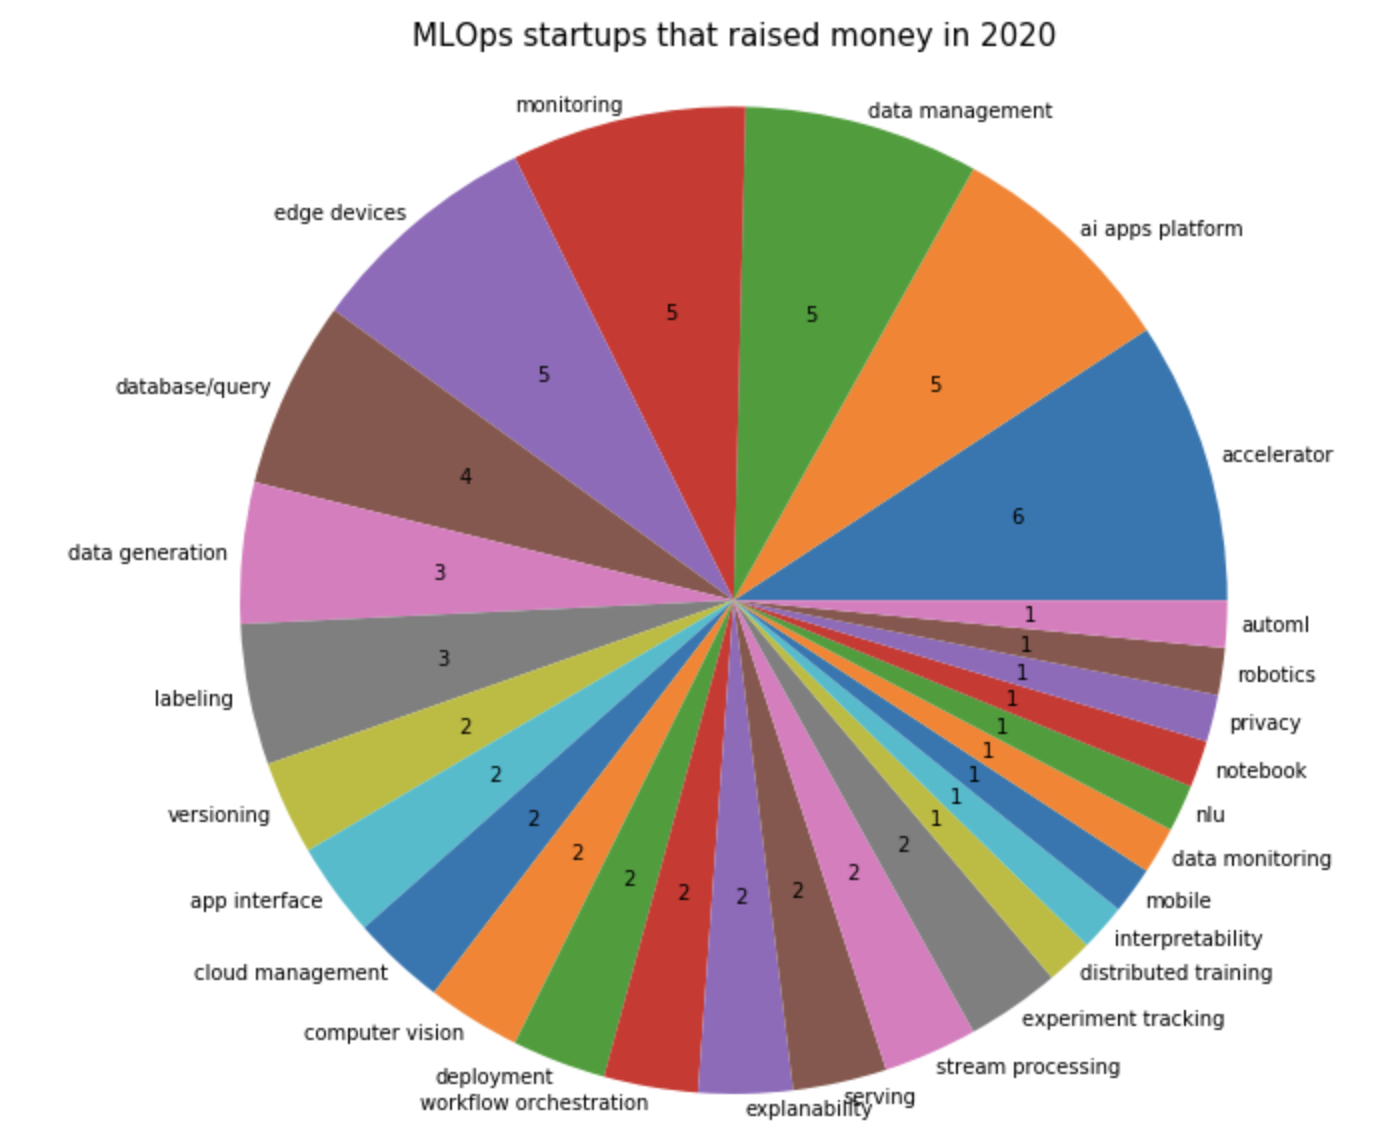 MLOps startups that raised money in 2020